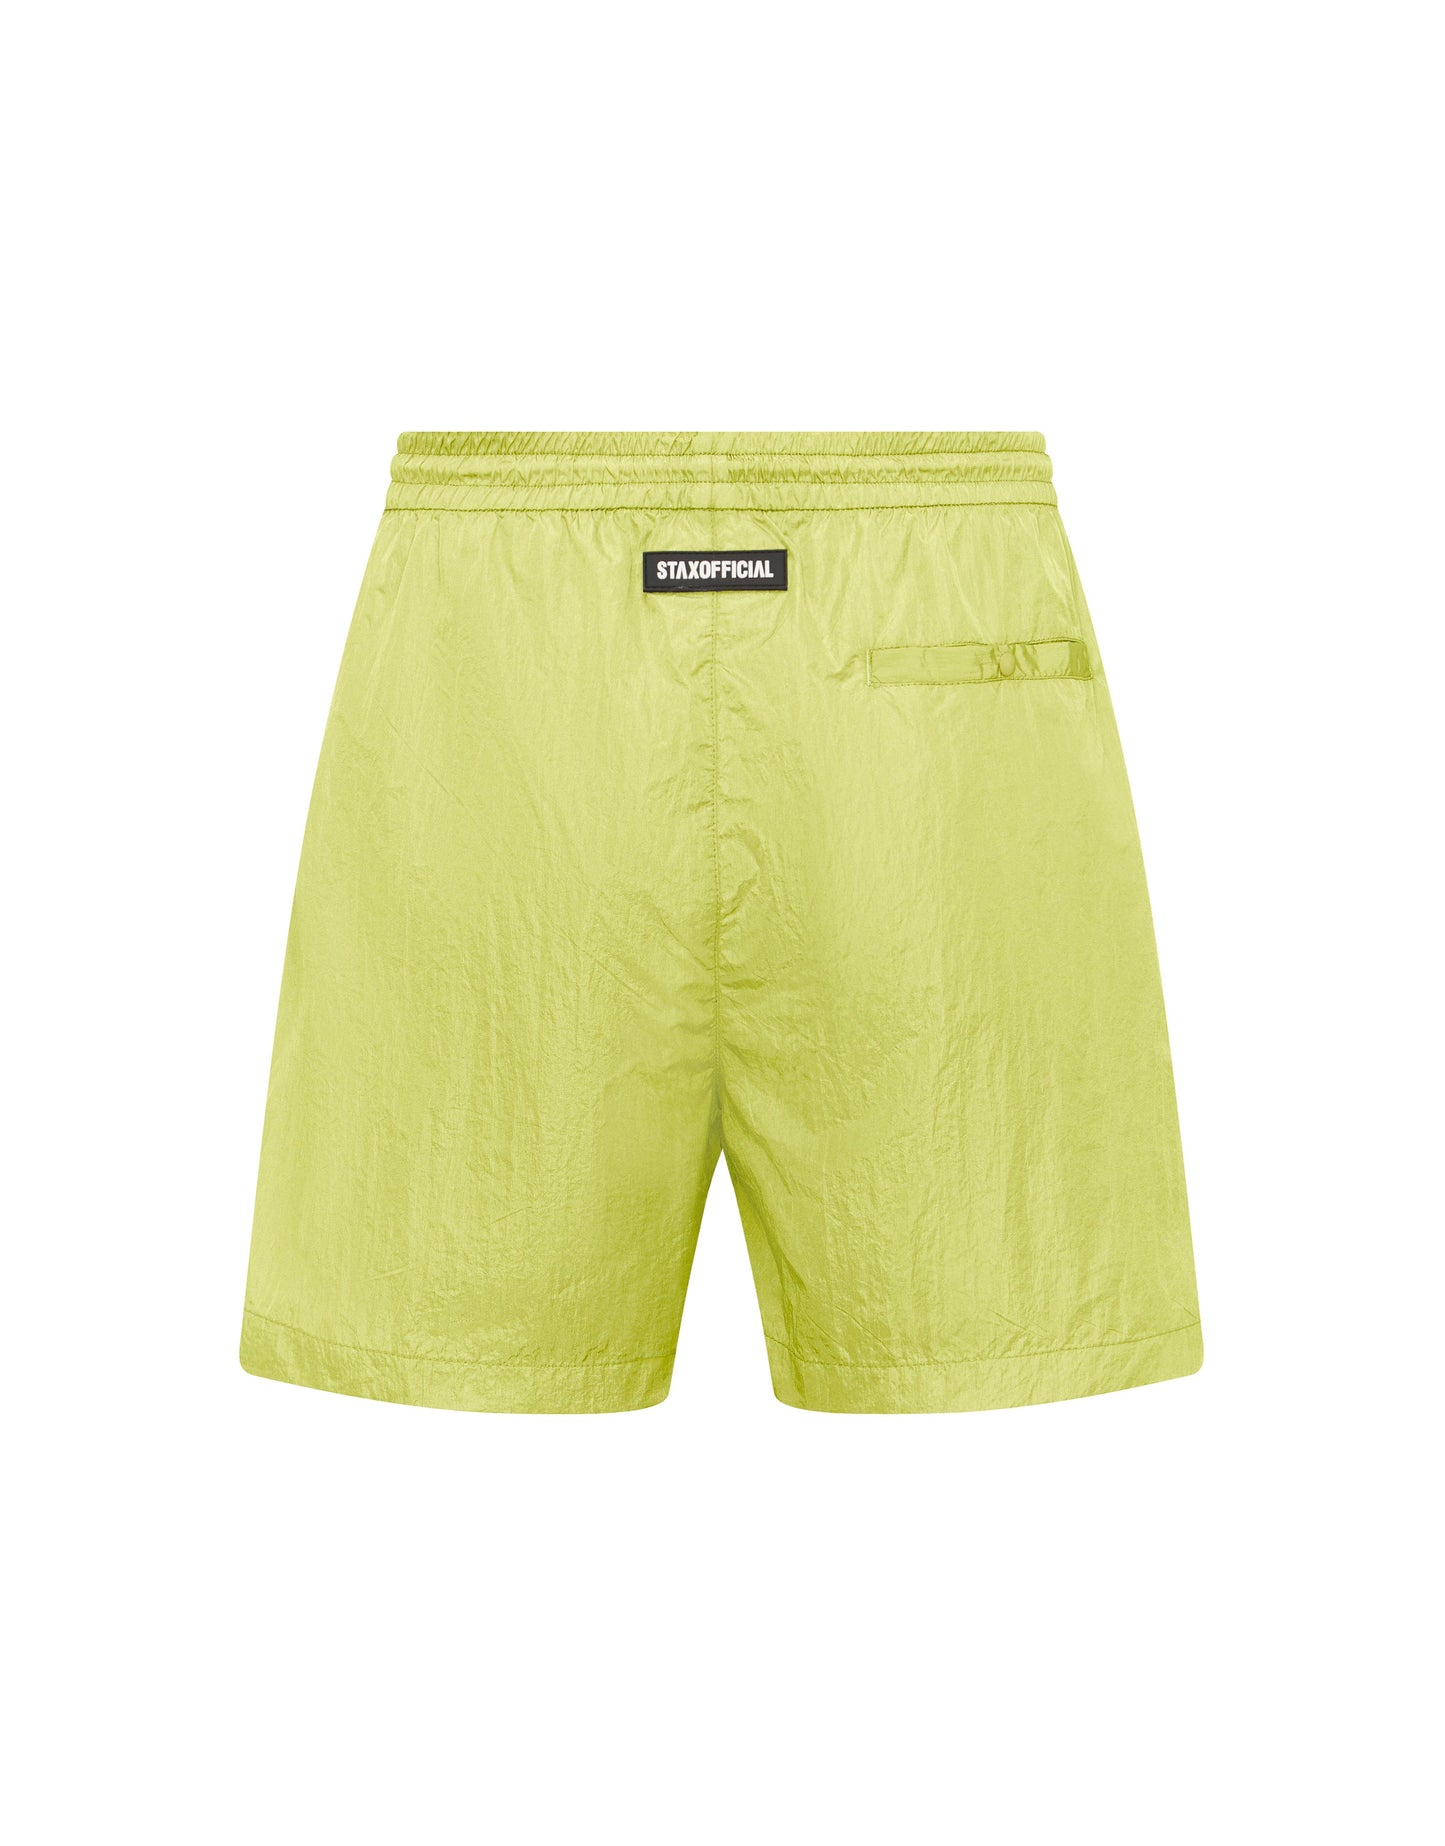 Mens Cursive Nylon Shorts - Sadzi (Lime)